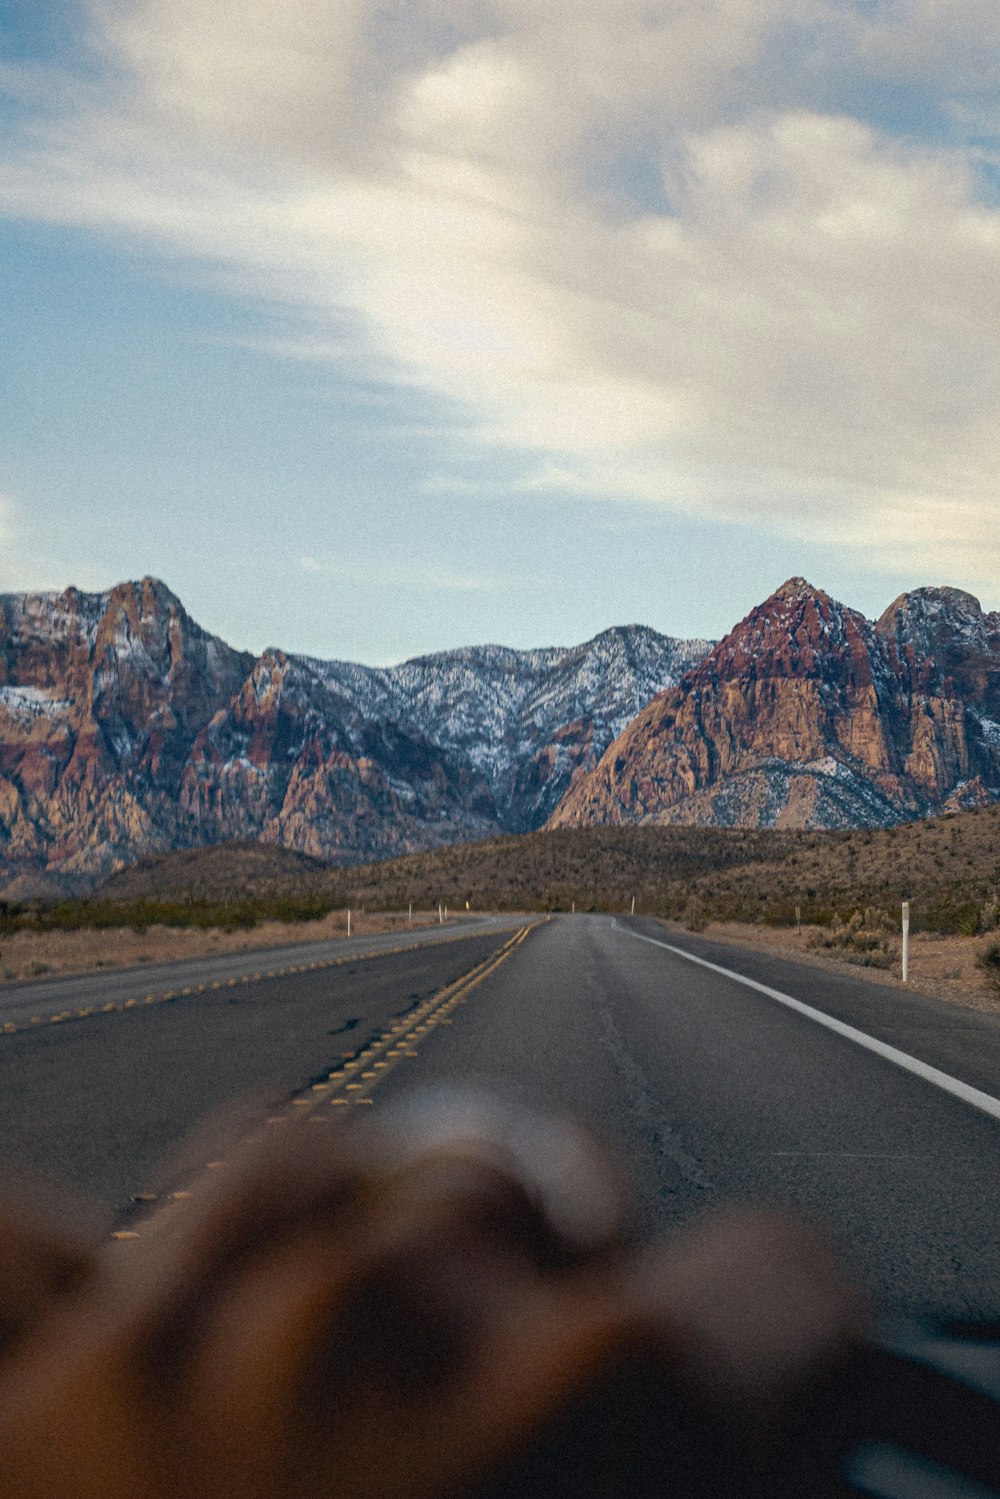 une personne conduisant une voiture sur une route avec des montagnes en arrière-plan